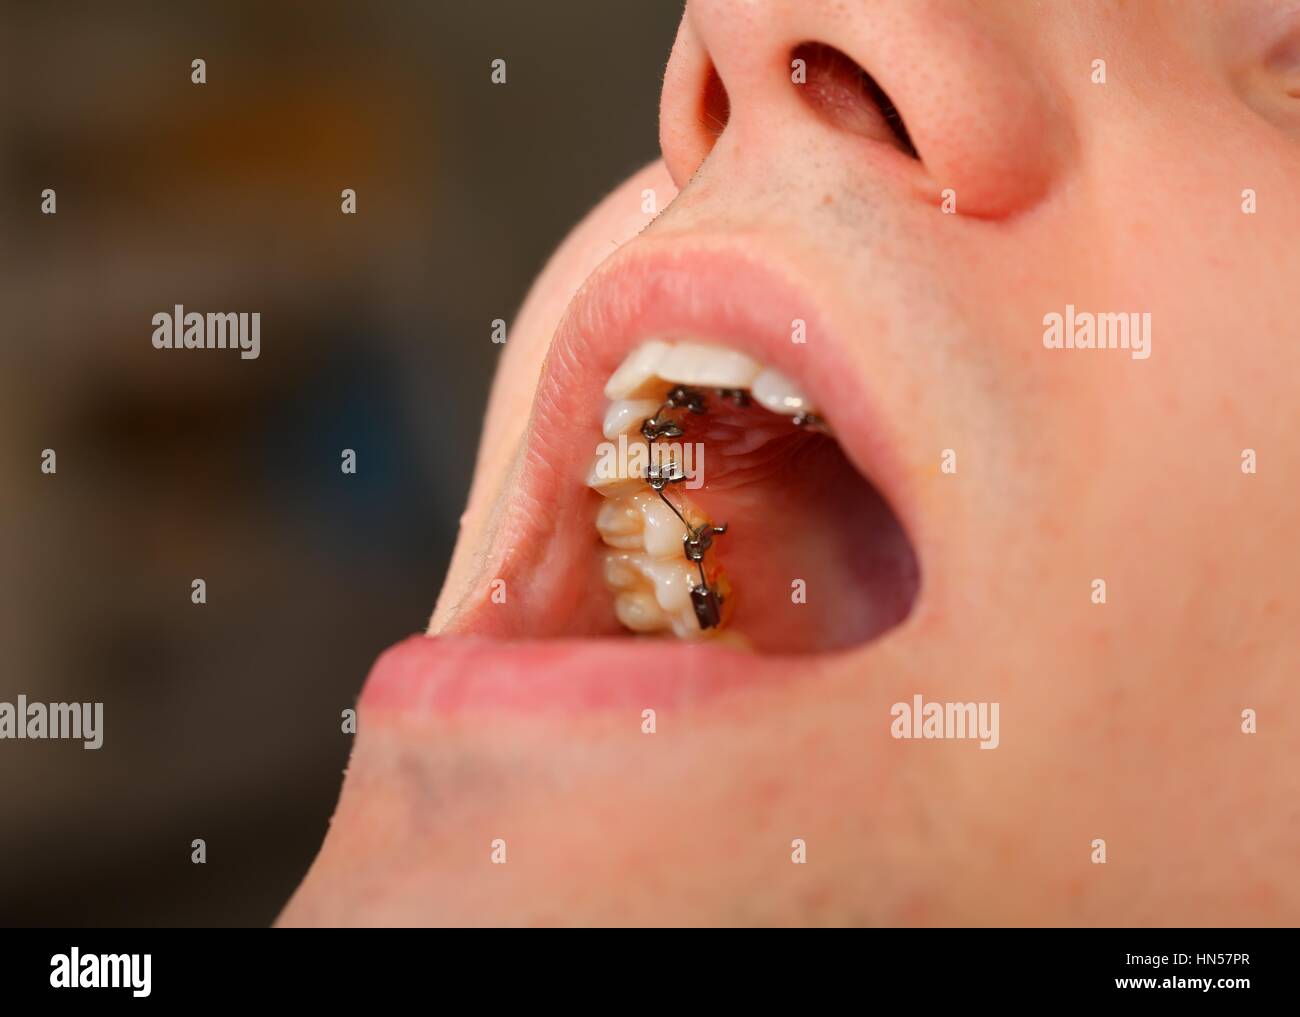 Bretelle linguali immagini e fotografie stock ad alta risoluzione - Alamy